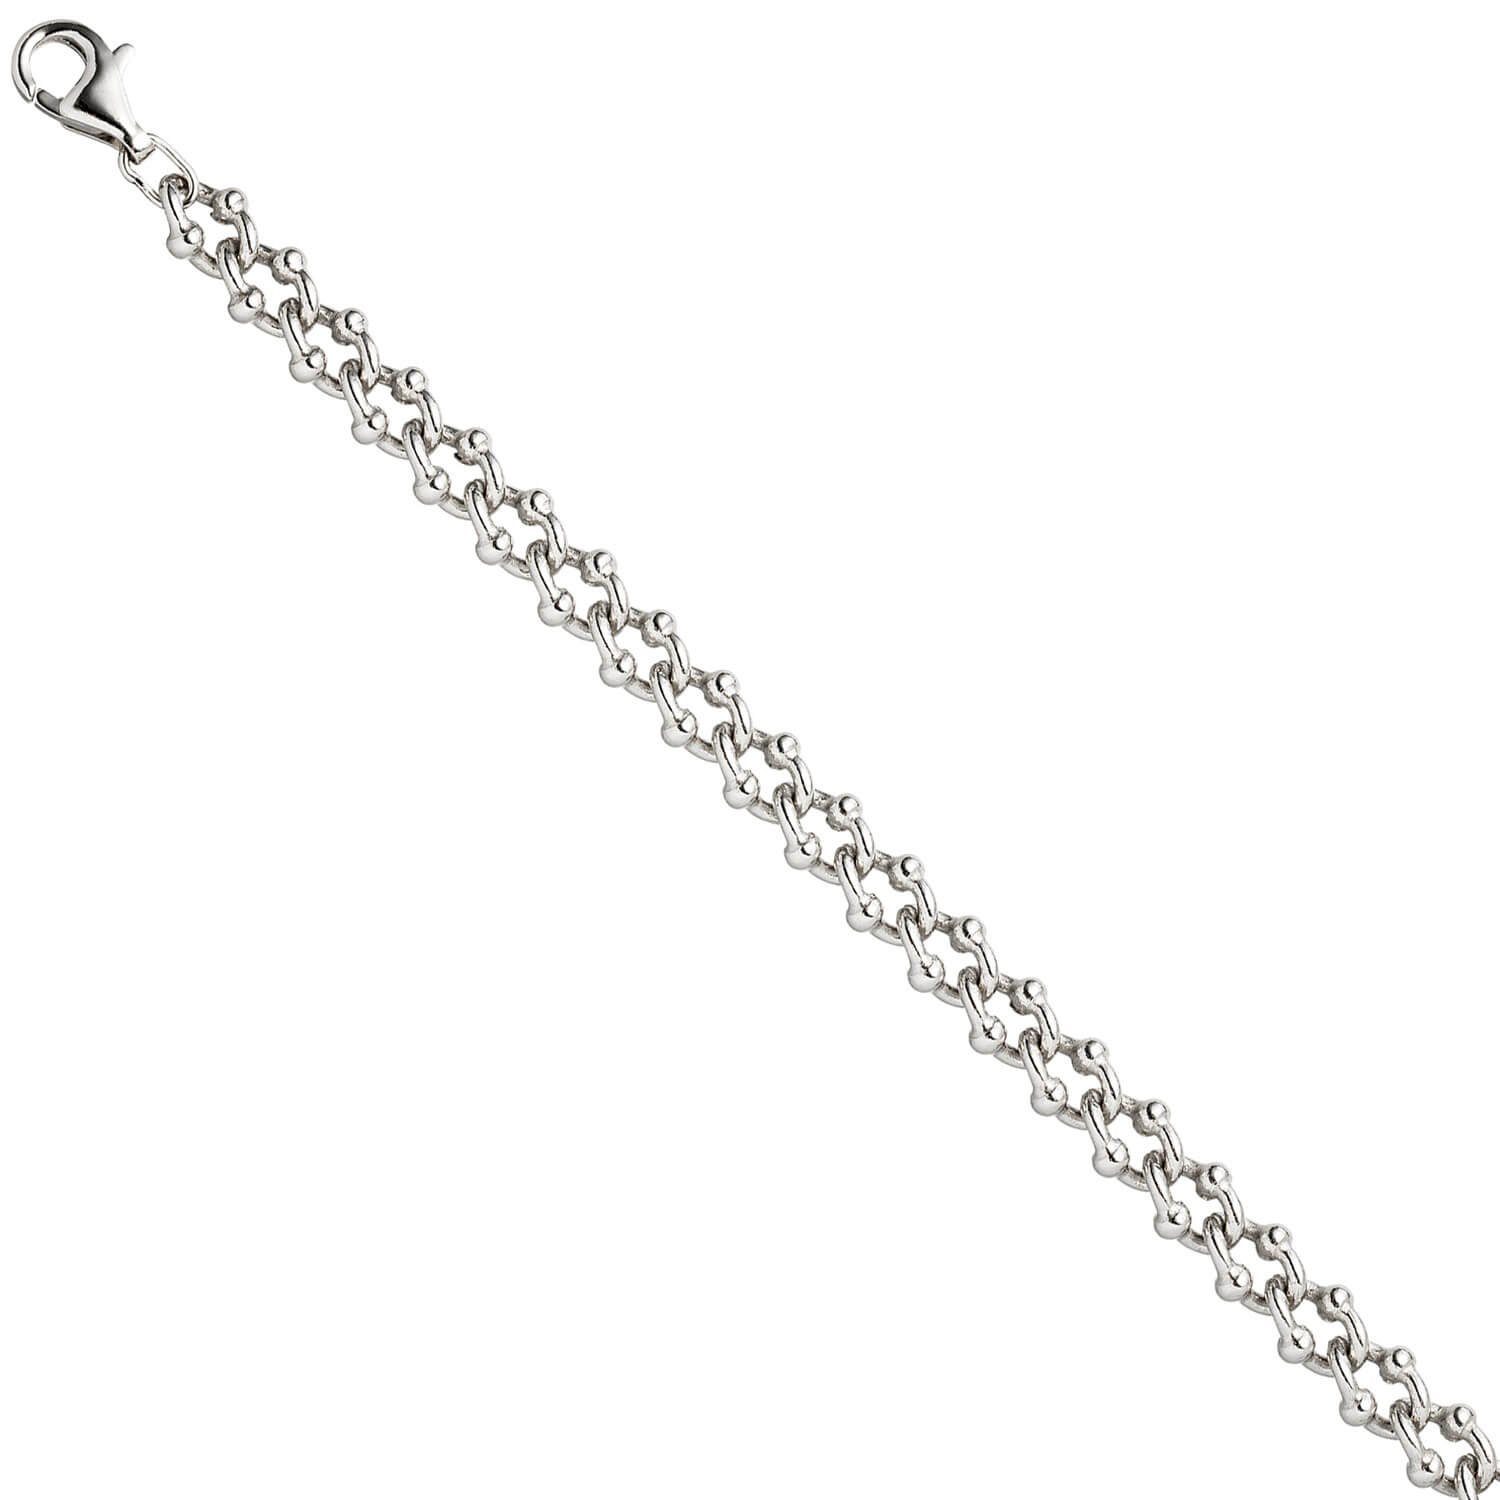 Schmuck Krone Silberarmband rhodiniert 925 Krebskette 21cm aus 7,3mm Armband Silber Armschmuck